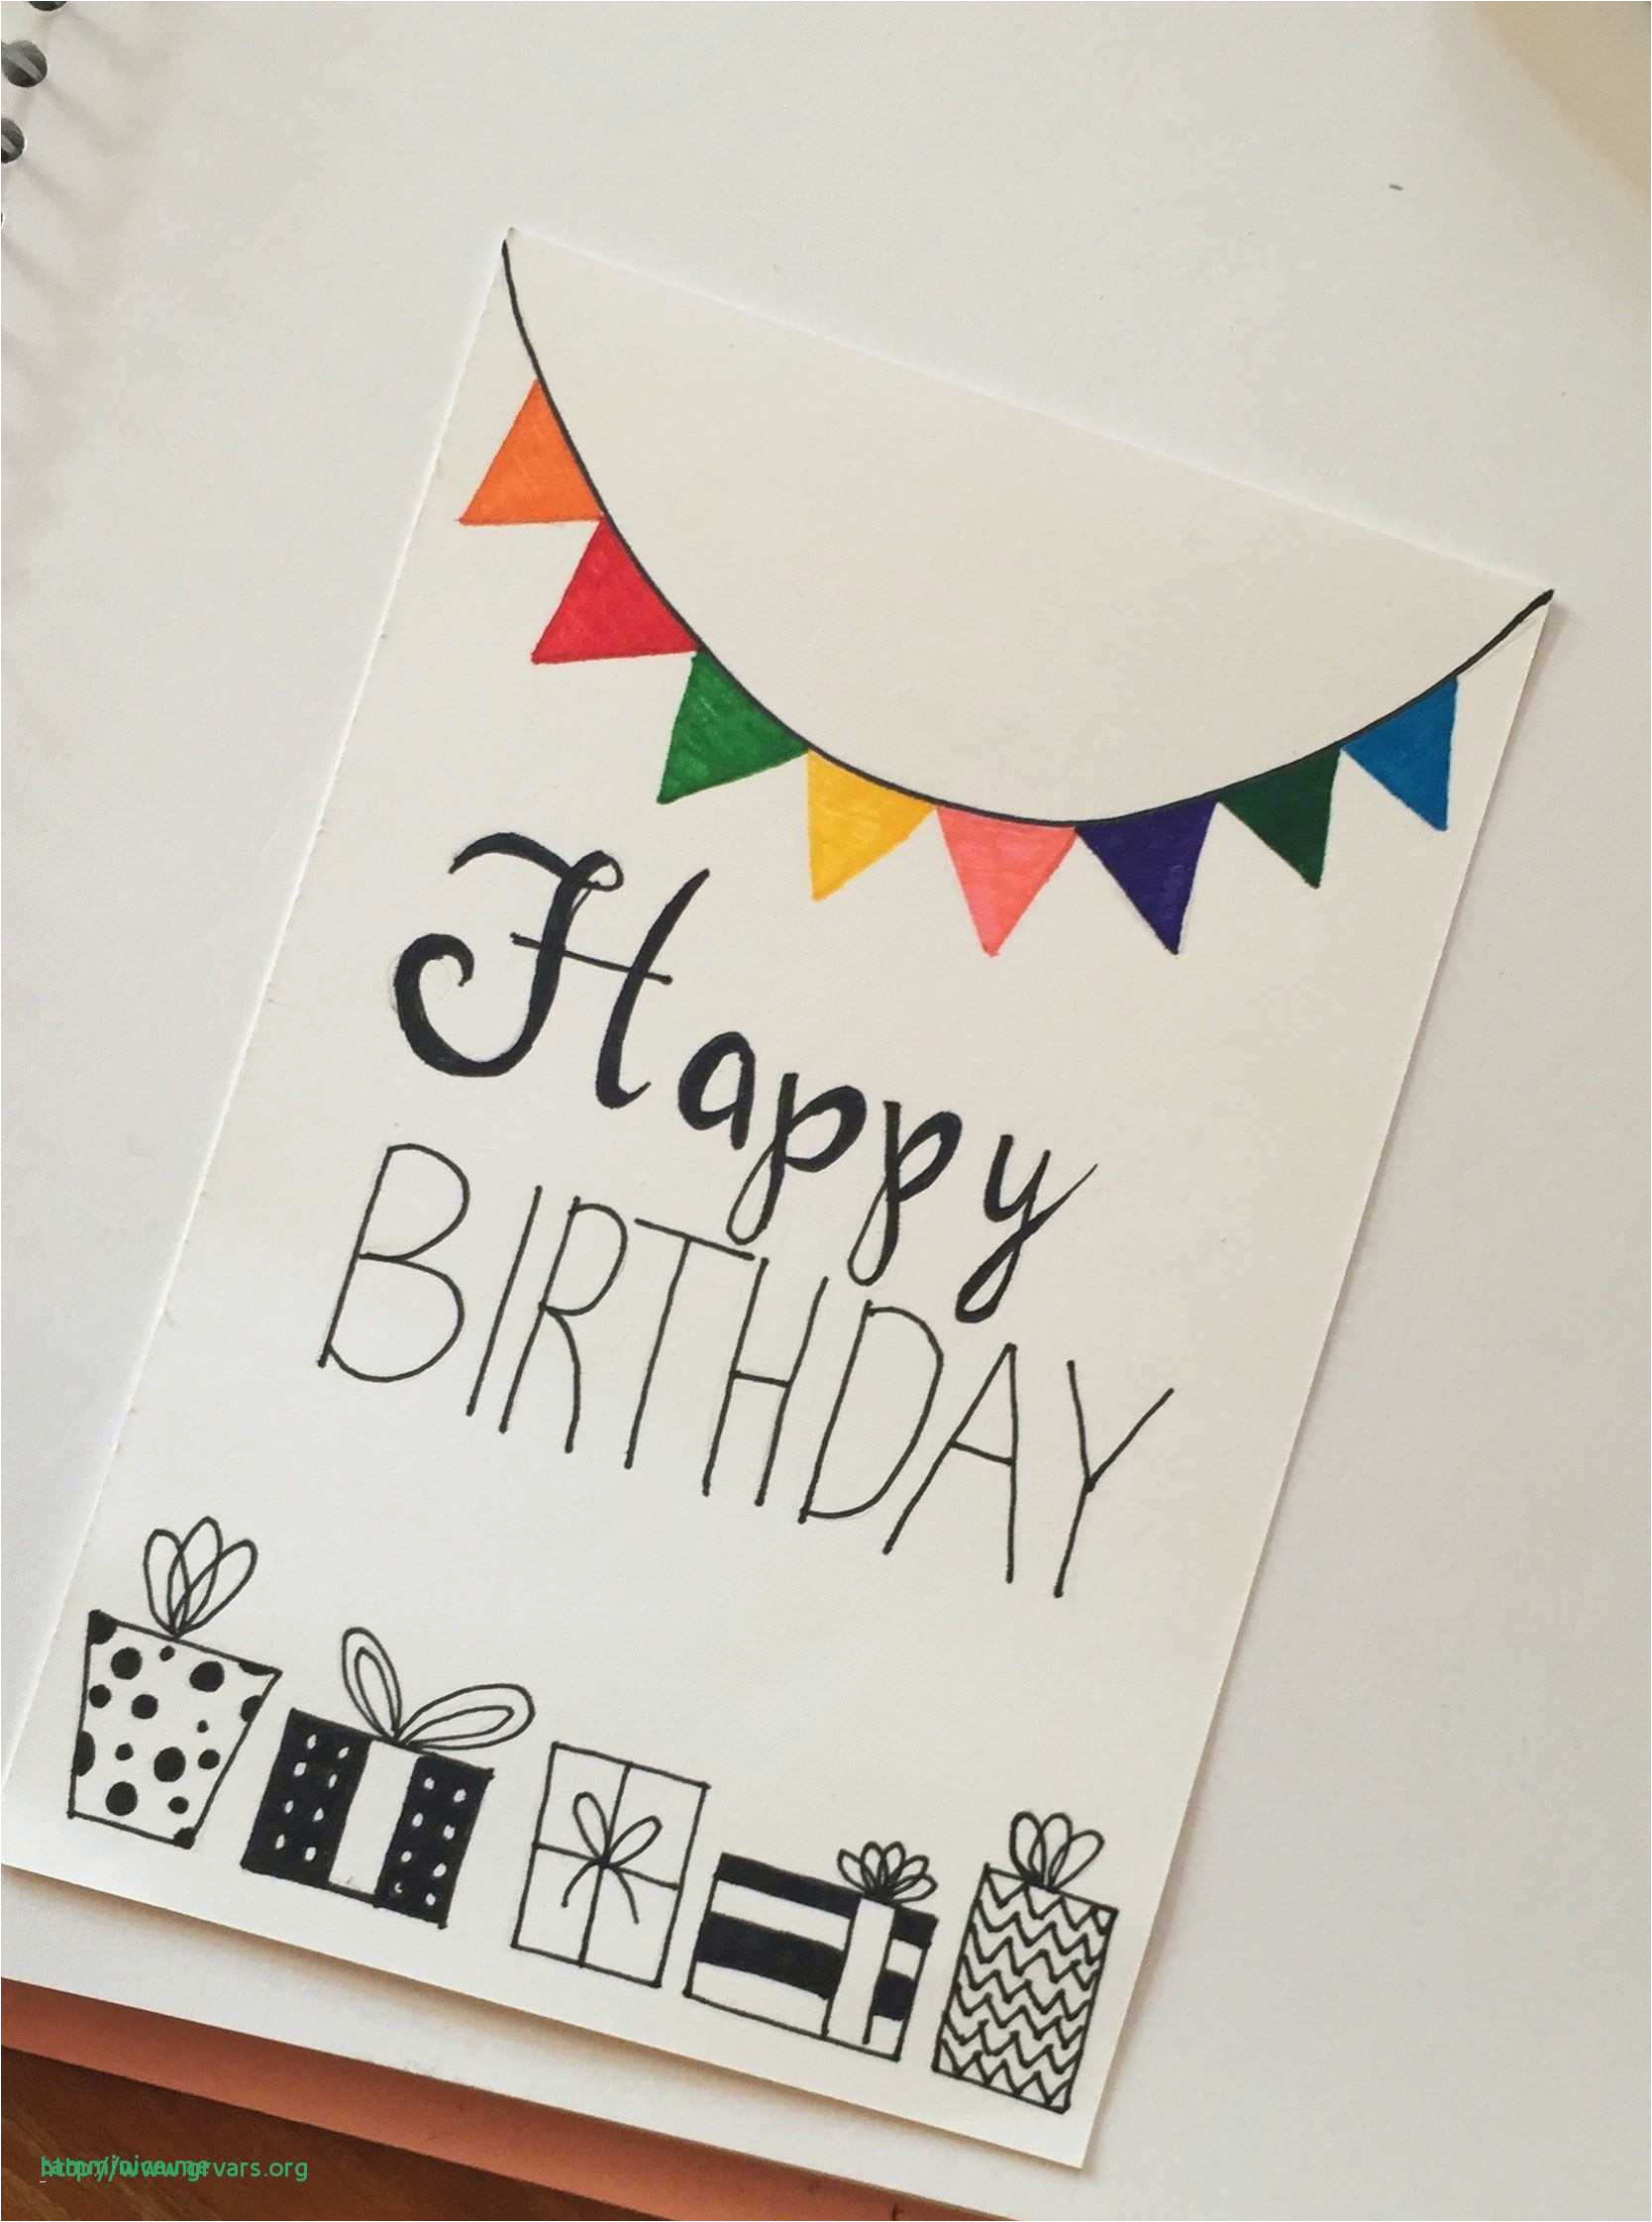 Handmade Birthday Cards Ideas For Friends How To Make Diy Birthday Cards For Best Friend Simple Handmade